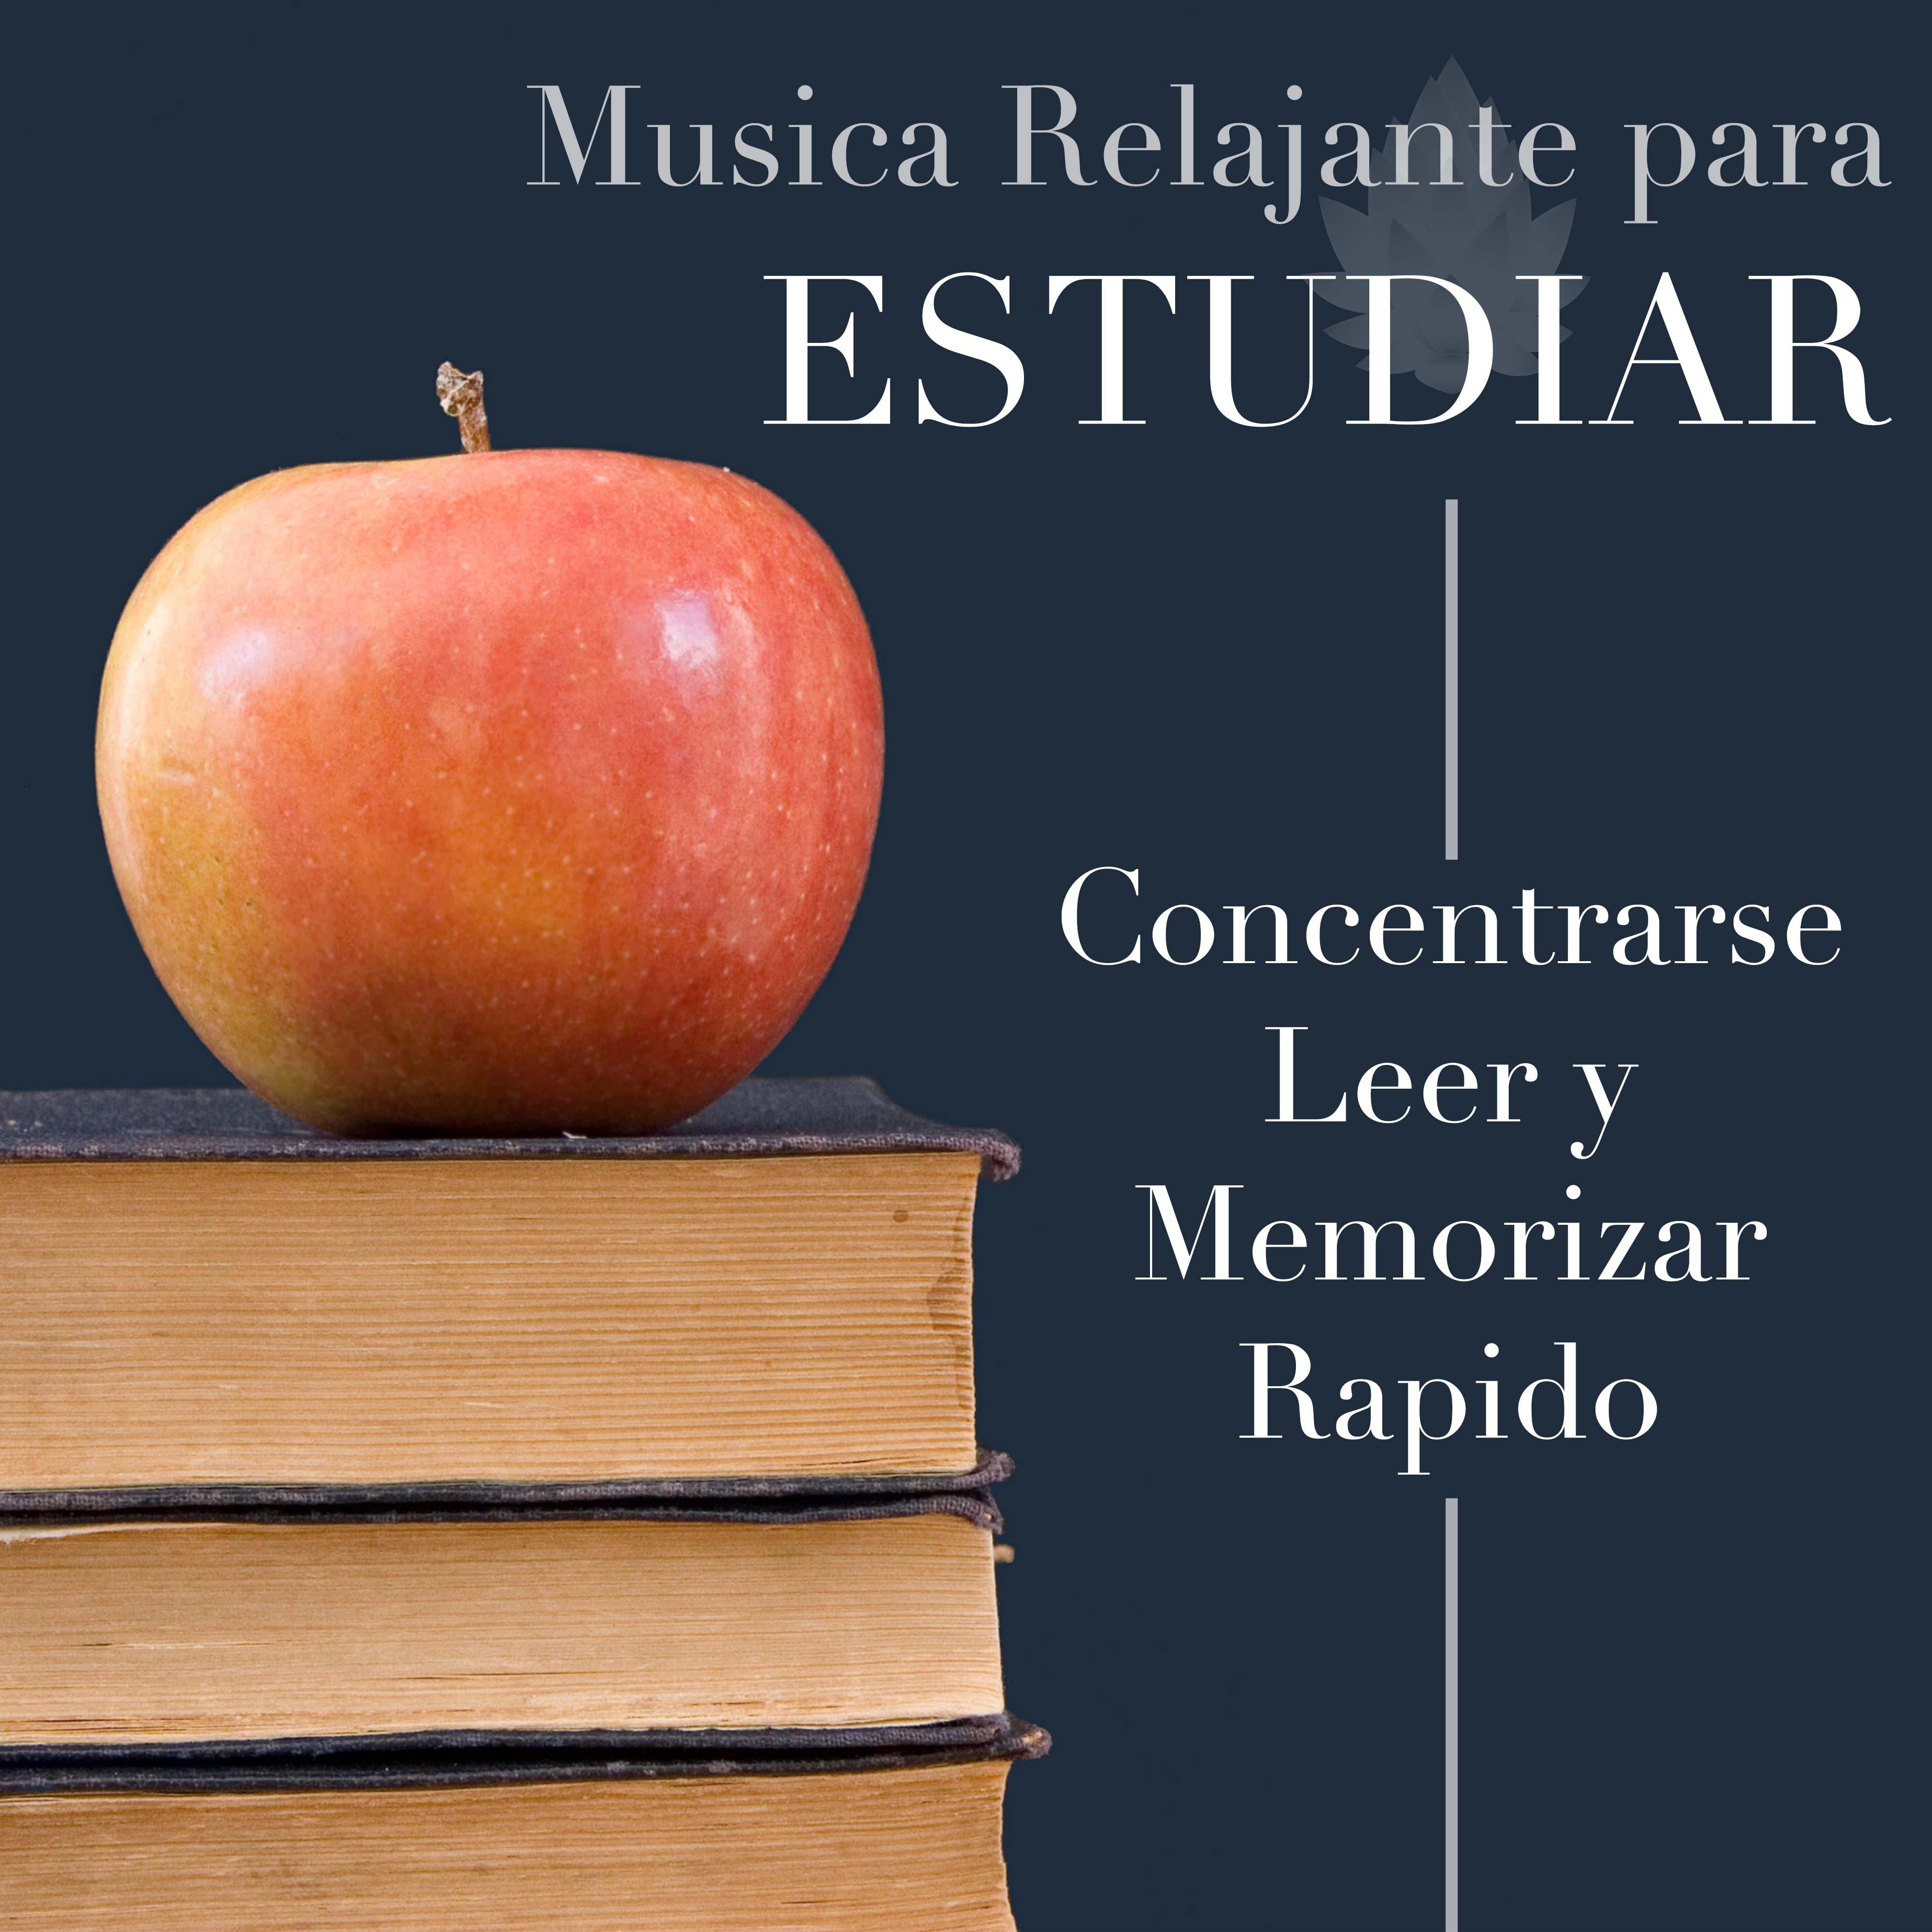 Top Mark - Musica Relajante para Estudiar, Concentrarse, Leer y Memorizar Rapido